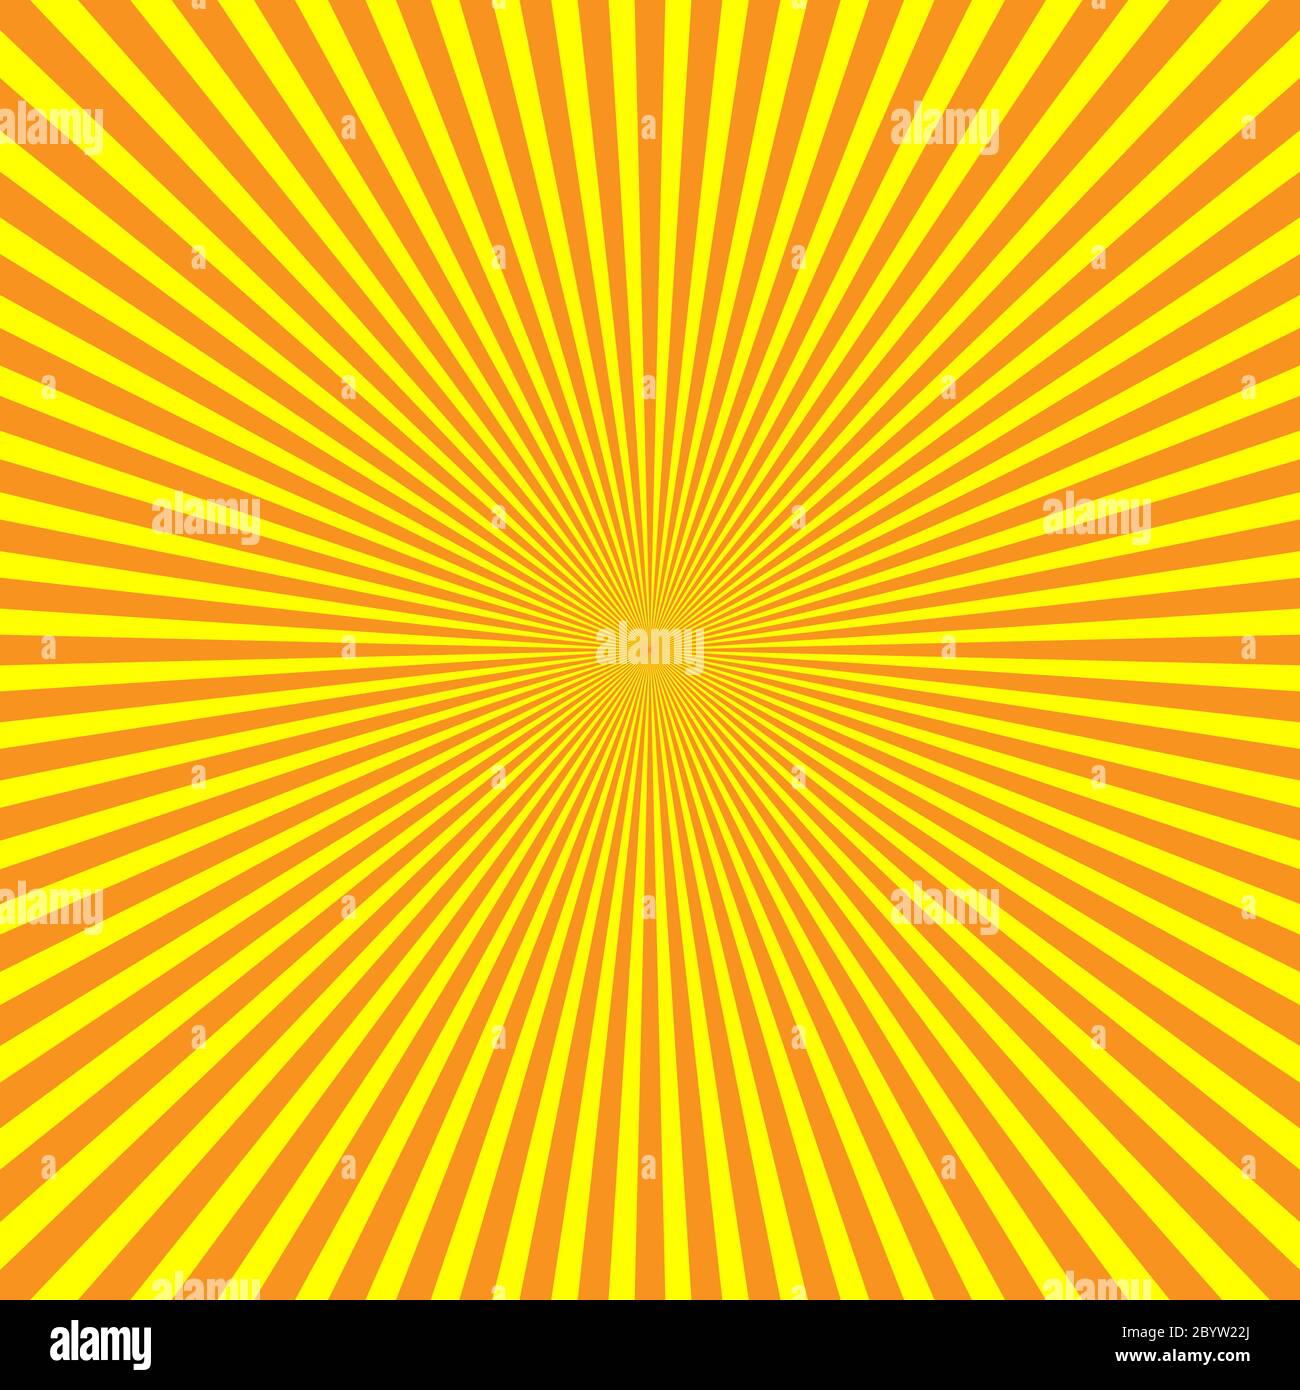 Raggi di luce giallo-arancio disposti radiali. Tema raggi solari. Modello di sfondo astratto. Illustrazione vettoriale. Illustrazione Vettoriale